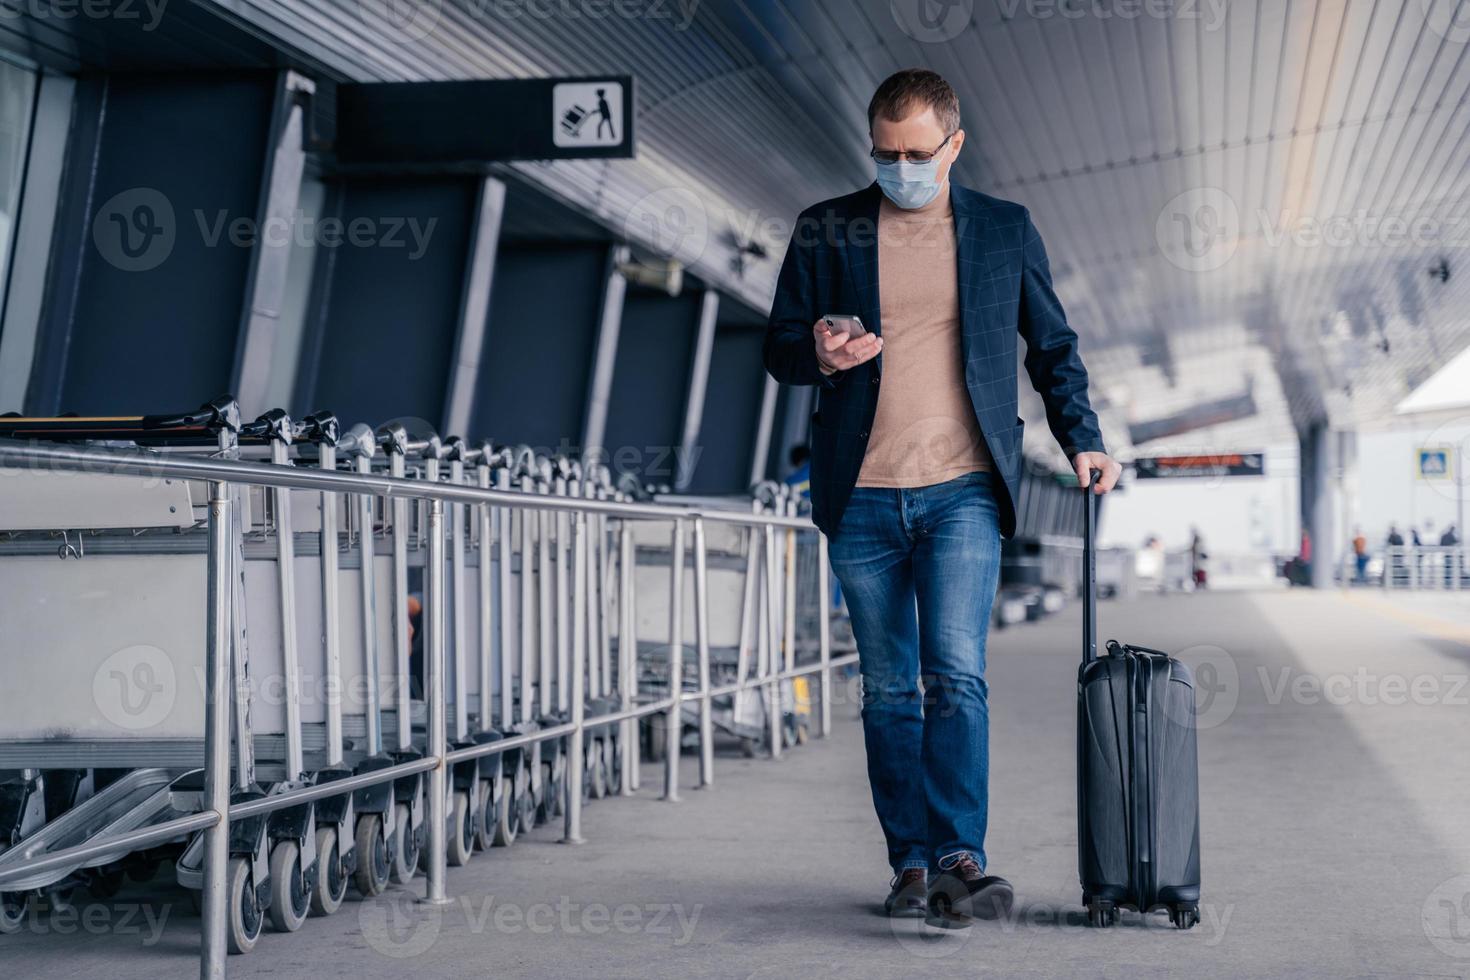 männlicher passagier geht auf den flughafen, hält koffer, überprüft den newsfeed auf dem smartphone, trägt während der pandemie des coronavirus eine medizinische einwegmaske und versucht, während des krankheitsvirus sicher zu sein. respiratorische Symptome foto